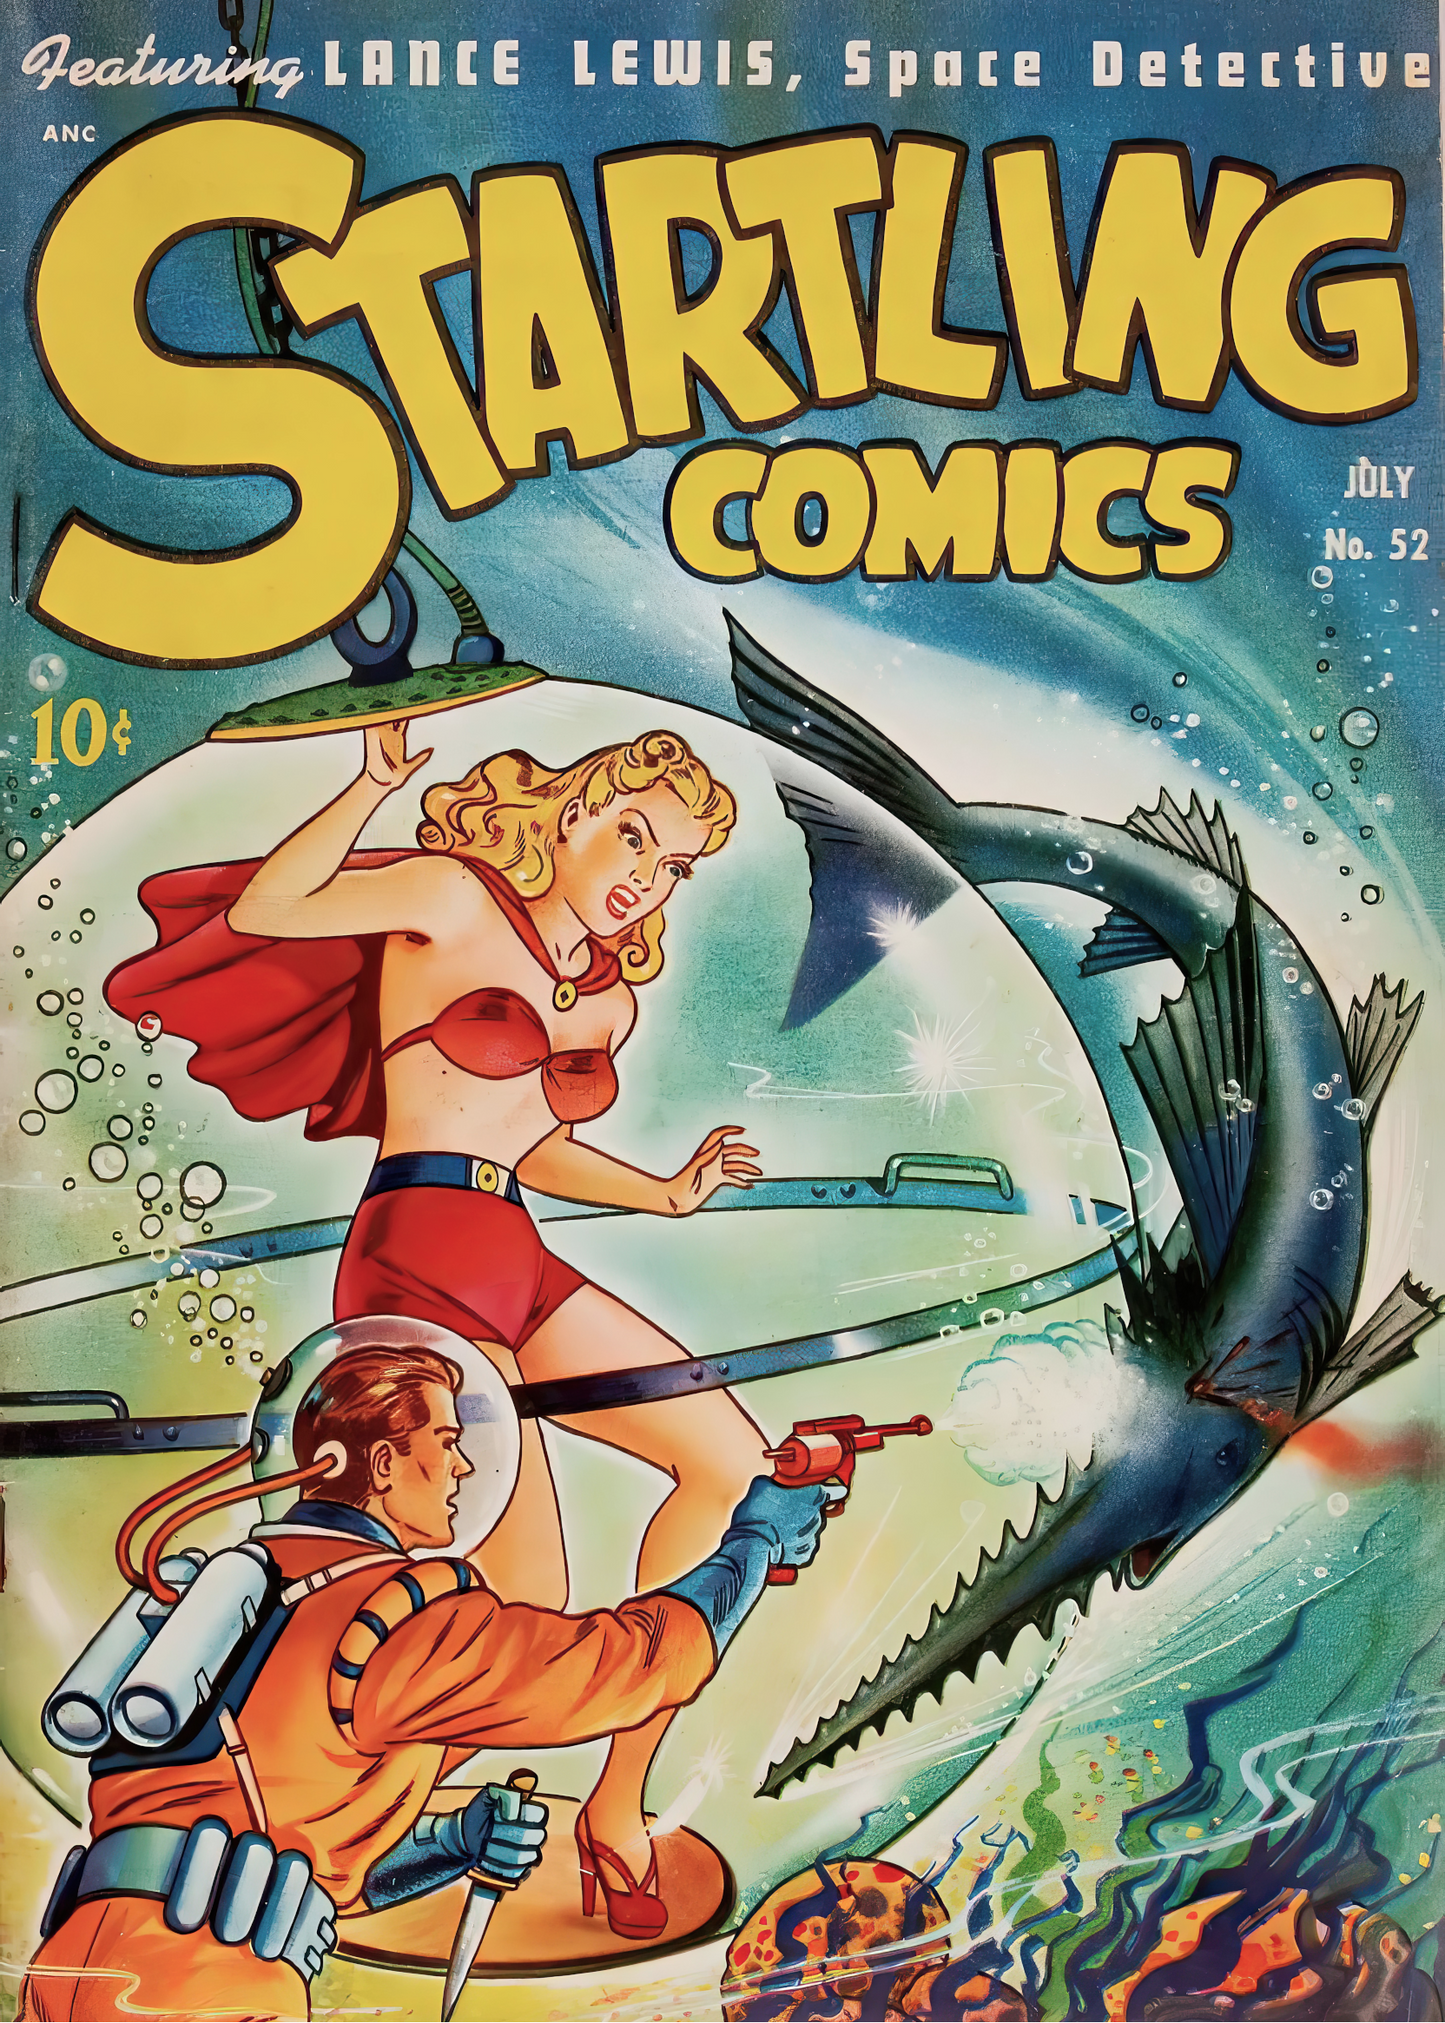 #1007 Startling Comics #52